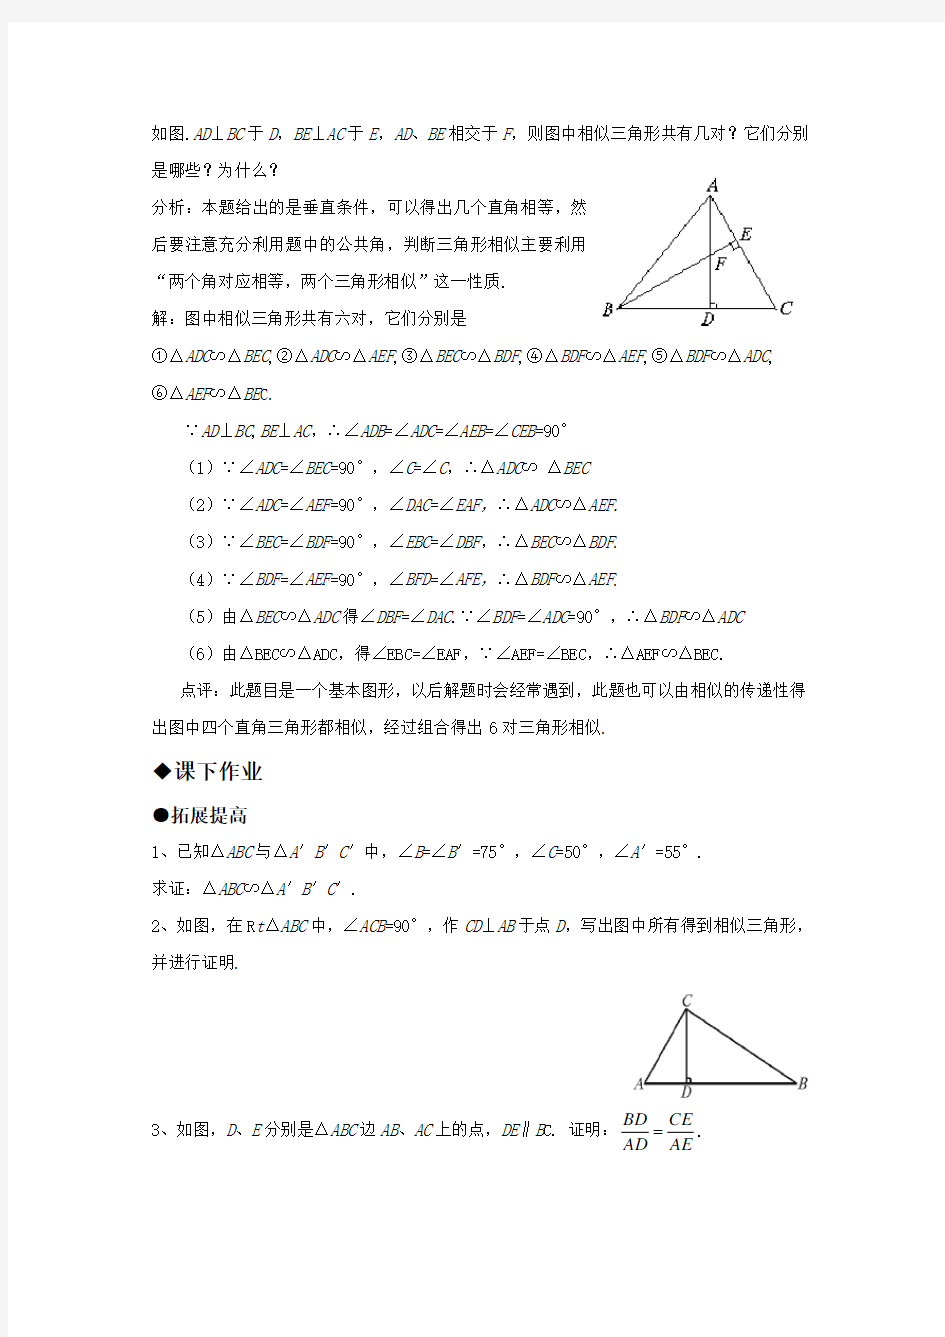 24.3.2-相似三角形的判定同步练习及答案(第一课时)